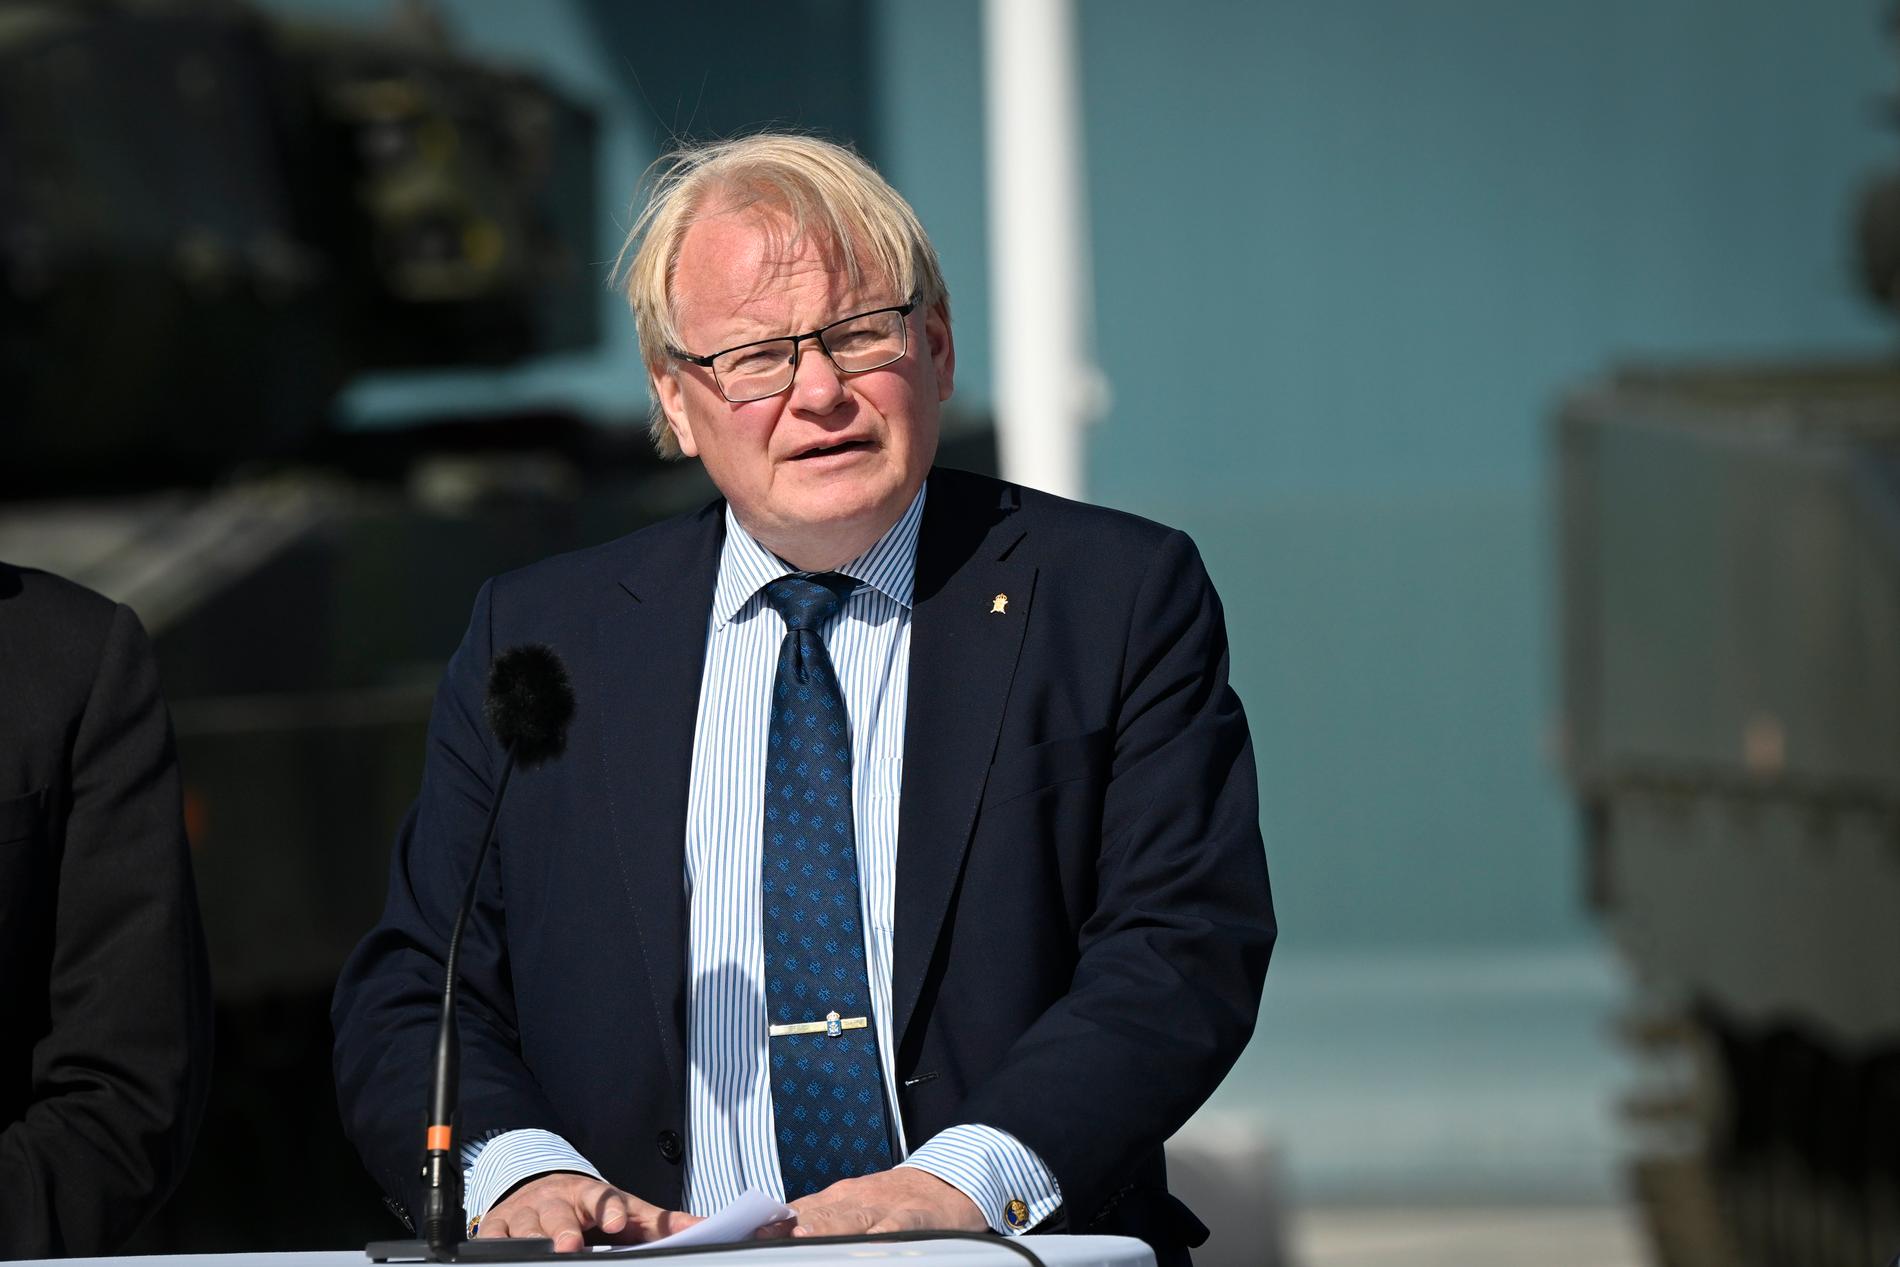 Sveriges försvarsminiter Peter Hultqvist (S) under en pressträff på P 18, Tofta, Gotland, i samband med Nordiskt-baltiskt försvarsministermöte.